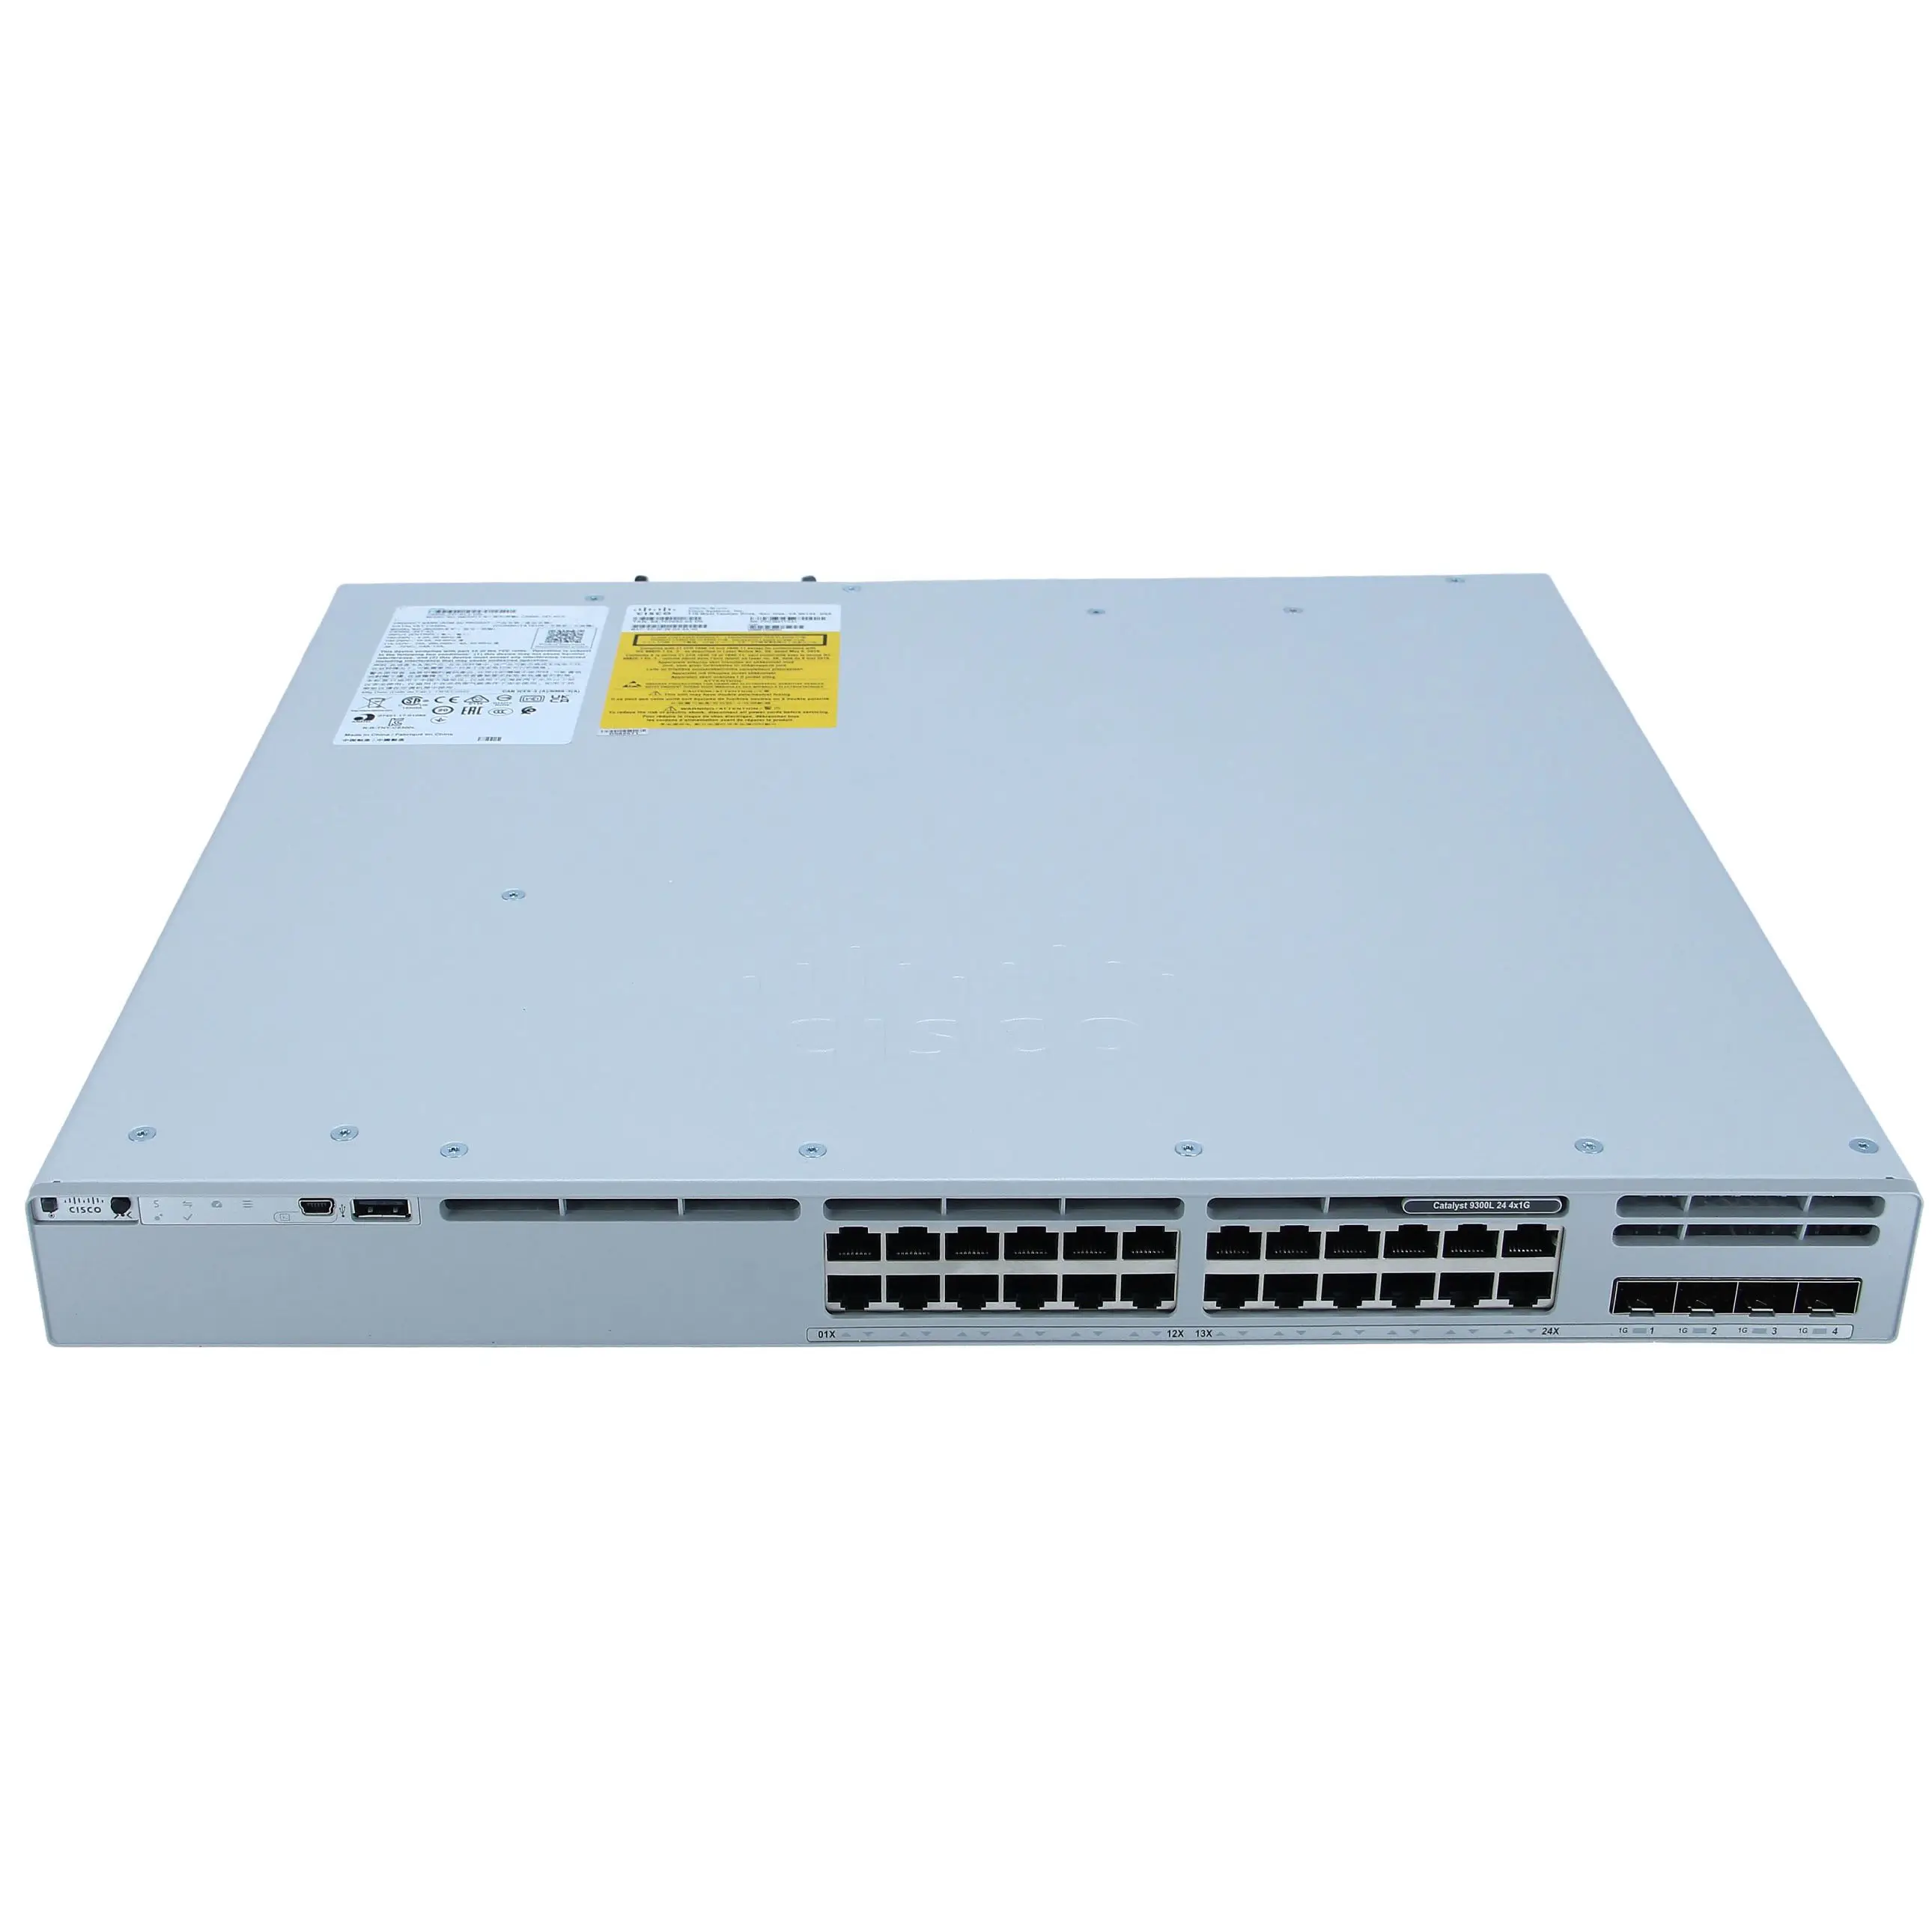 最近の売れ筋C9300L-24T-4G-E 9300L24ポートデータスイッチ24 Poe Network Essentials 4x1Gアップリンクネットワーク24ポートスイッチ